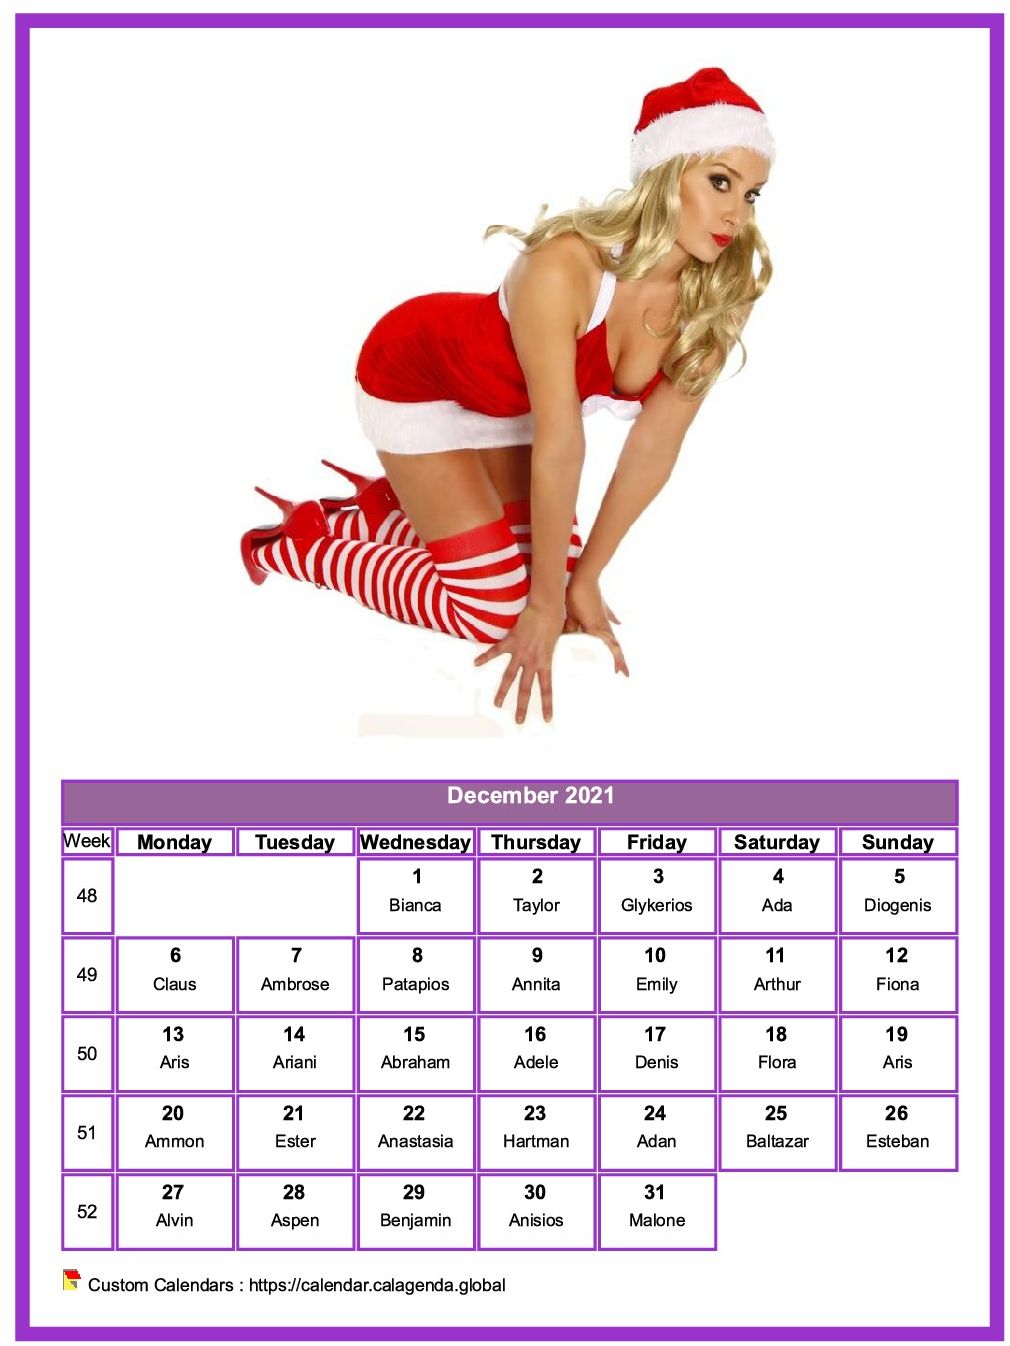 Calendar december 2021 women